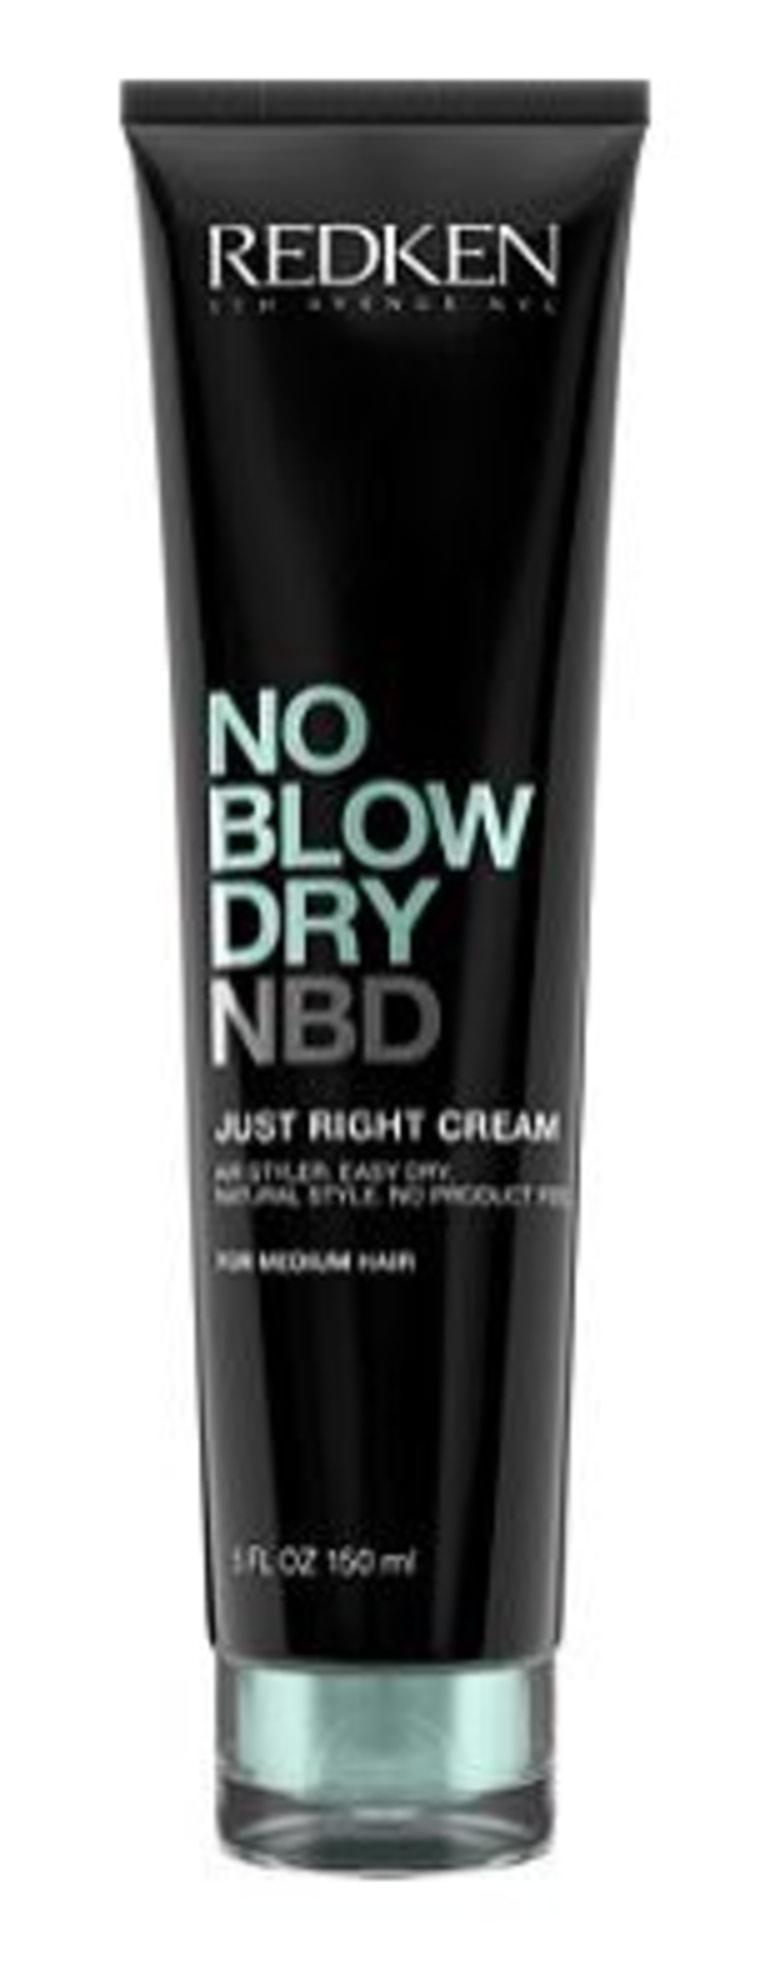 Redken NBD cream